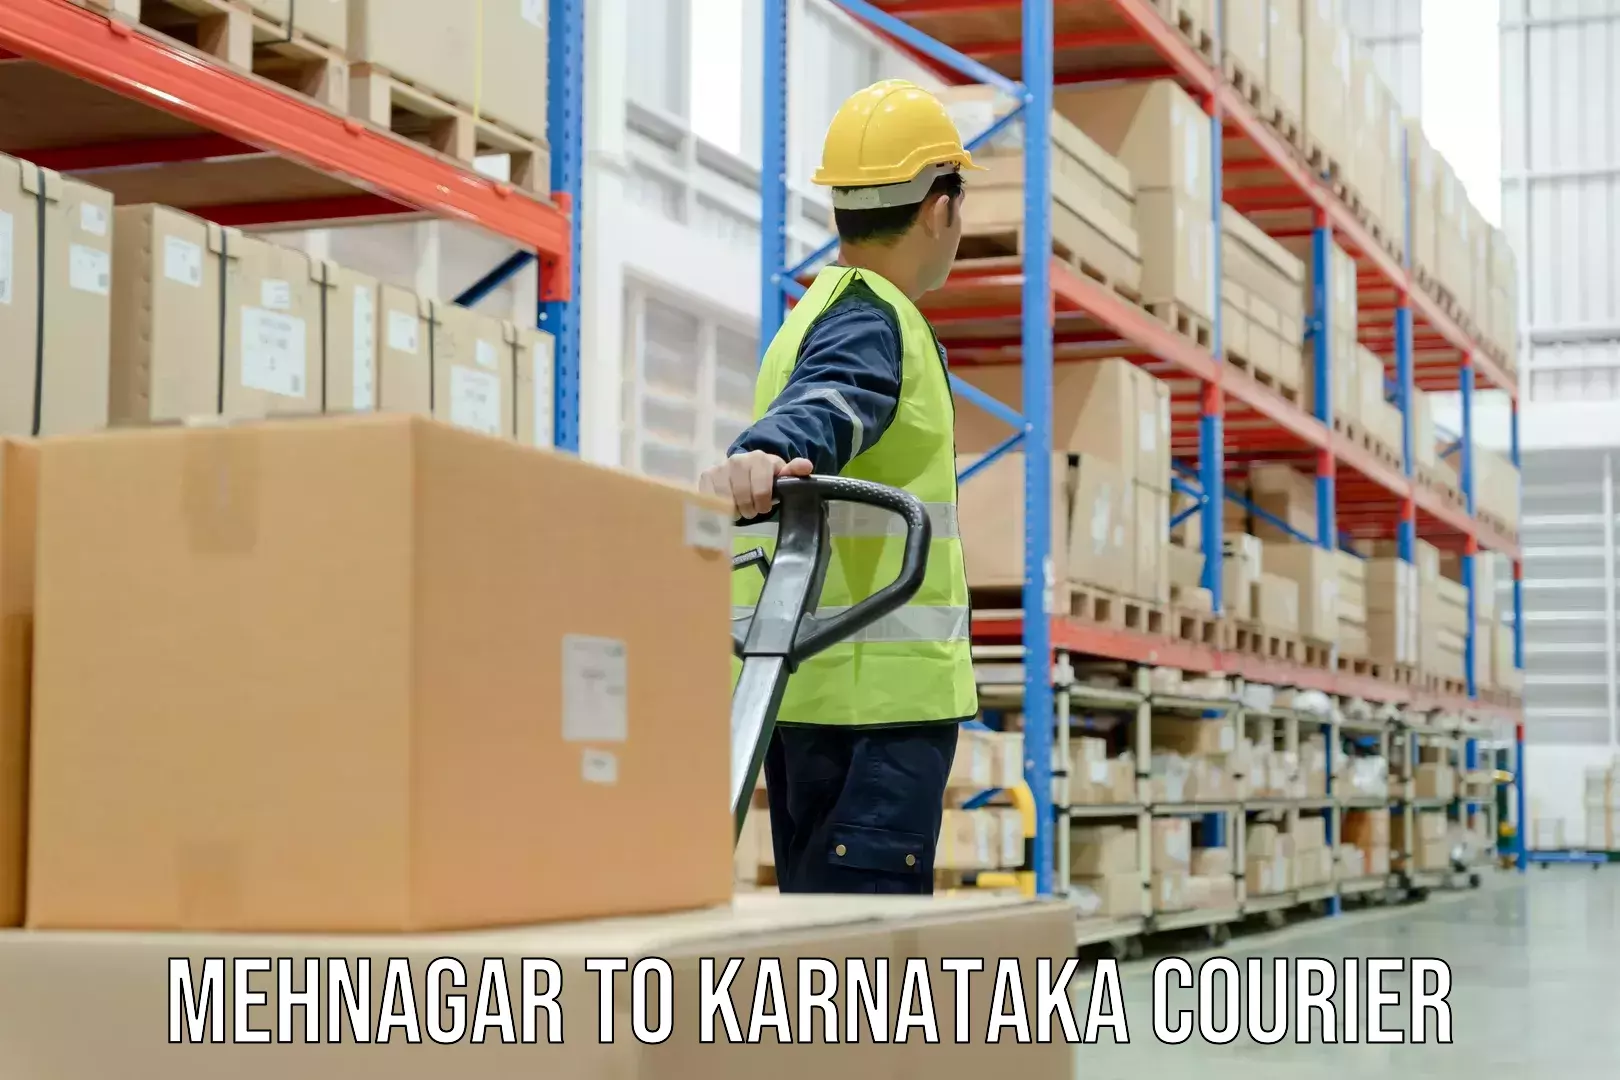 Specialized courier services Mehnagar to Karnataka